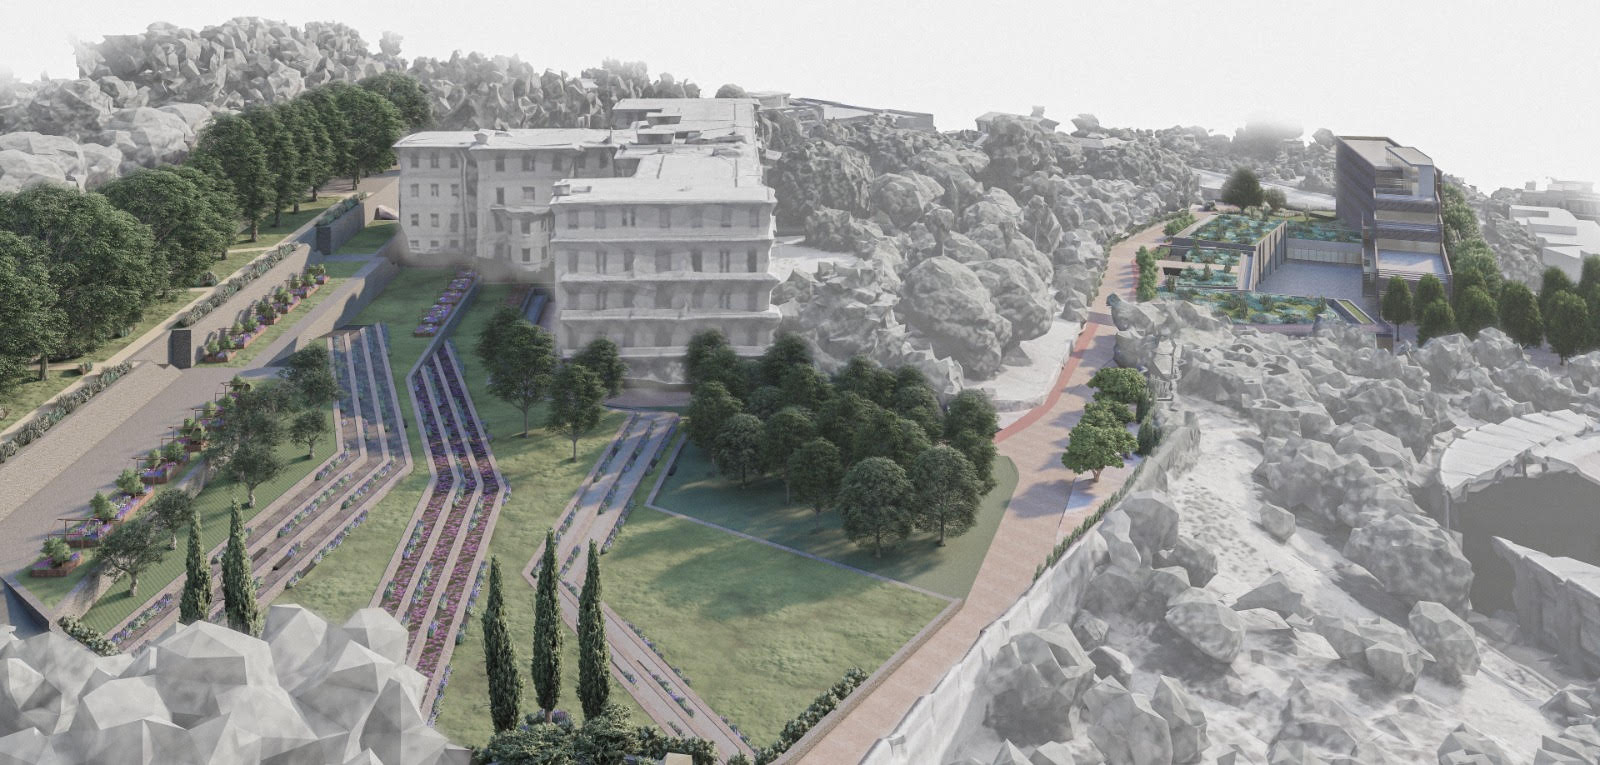 Il rendering del futuro polo universitario nell'area dell'ex ospedale "Ascoli-Tomaselli"